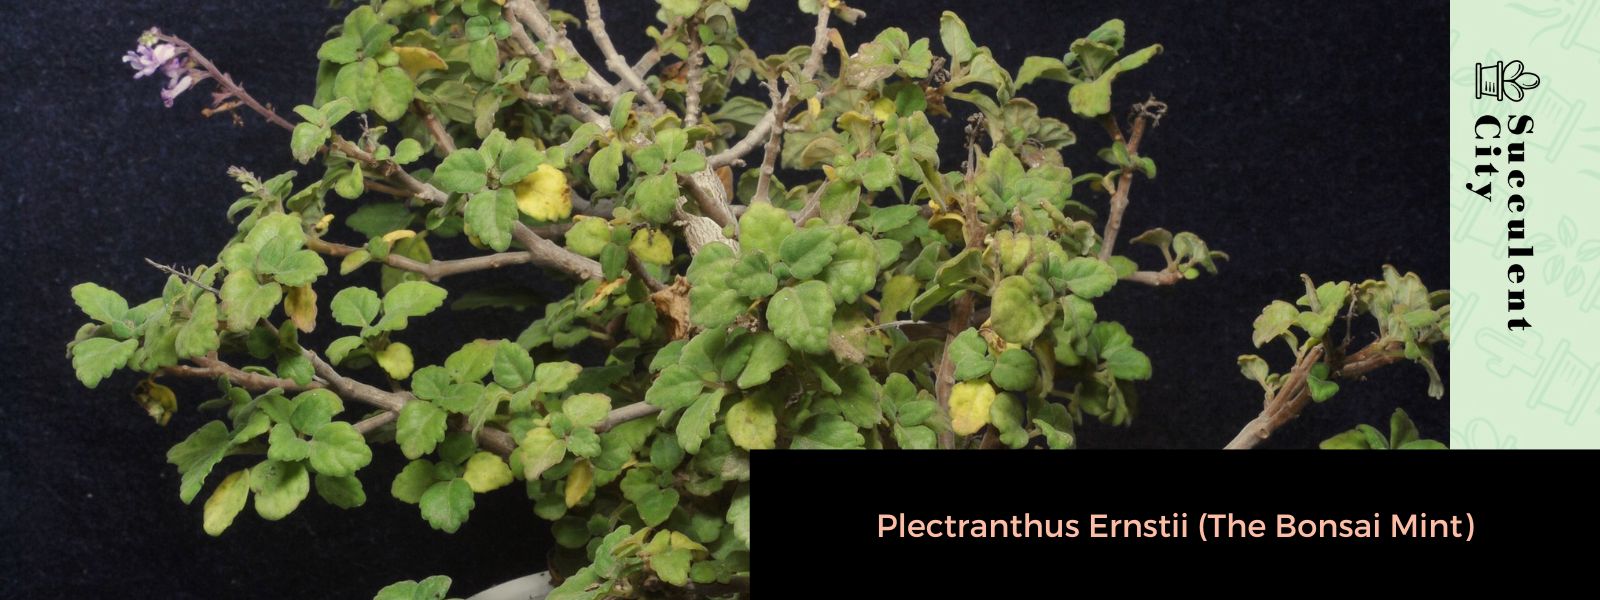 Plectranthus Ernstii (La menta del bonsái)